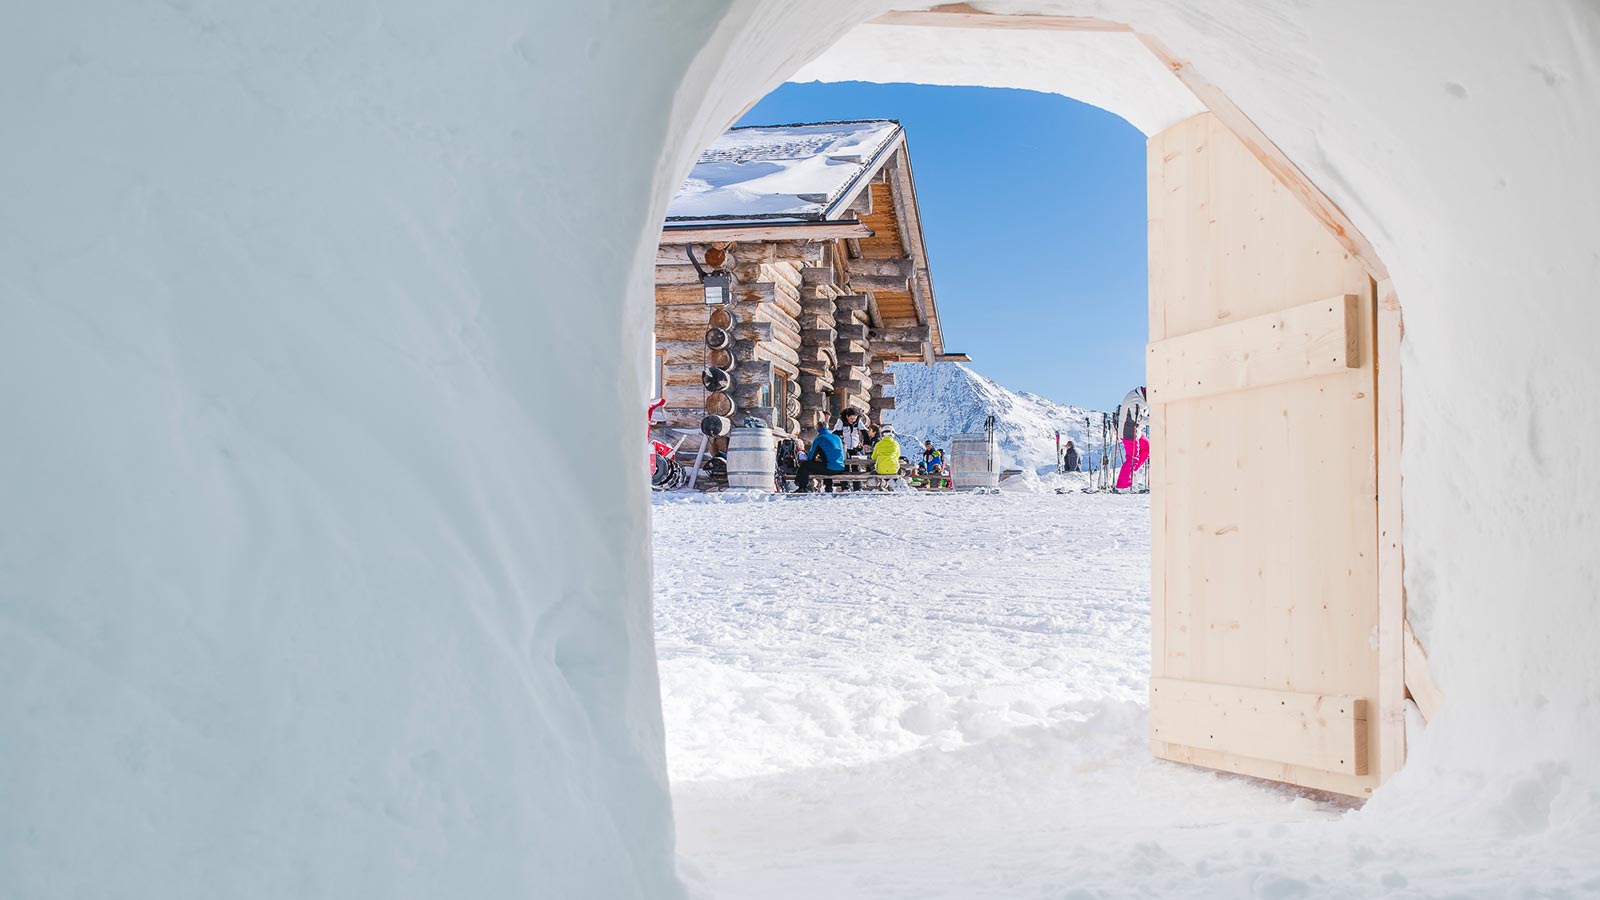 Scorcio da un turista che ha scelto di godersi l'after ski in un igloo